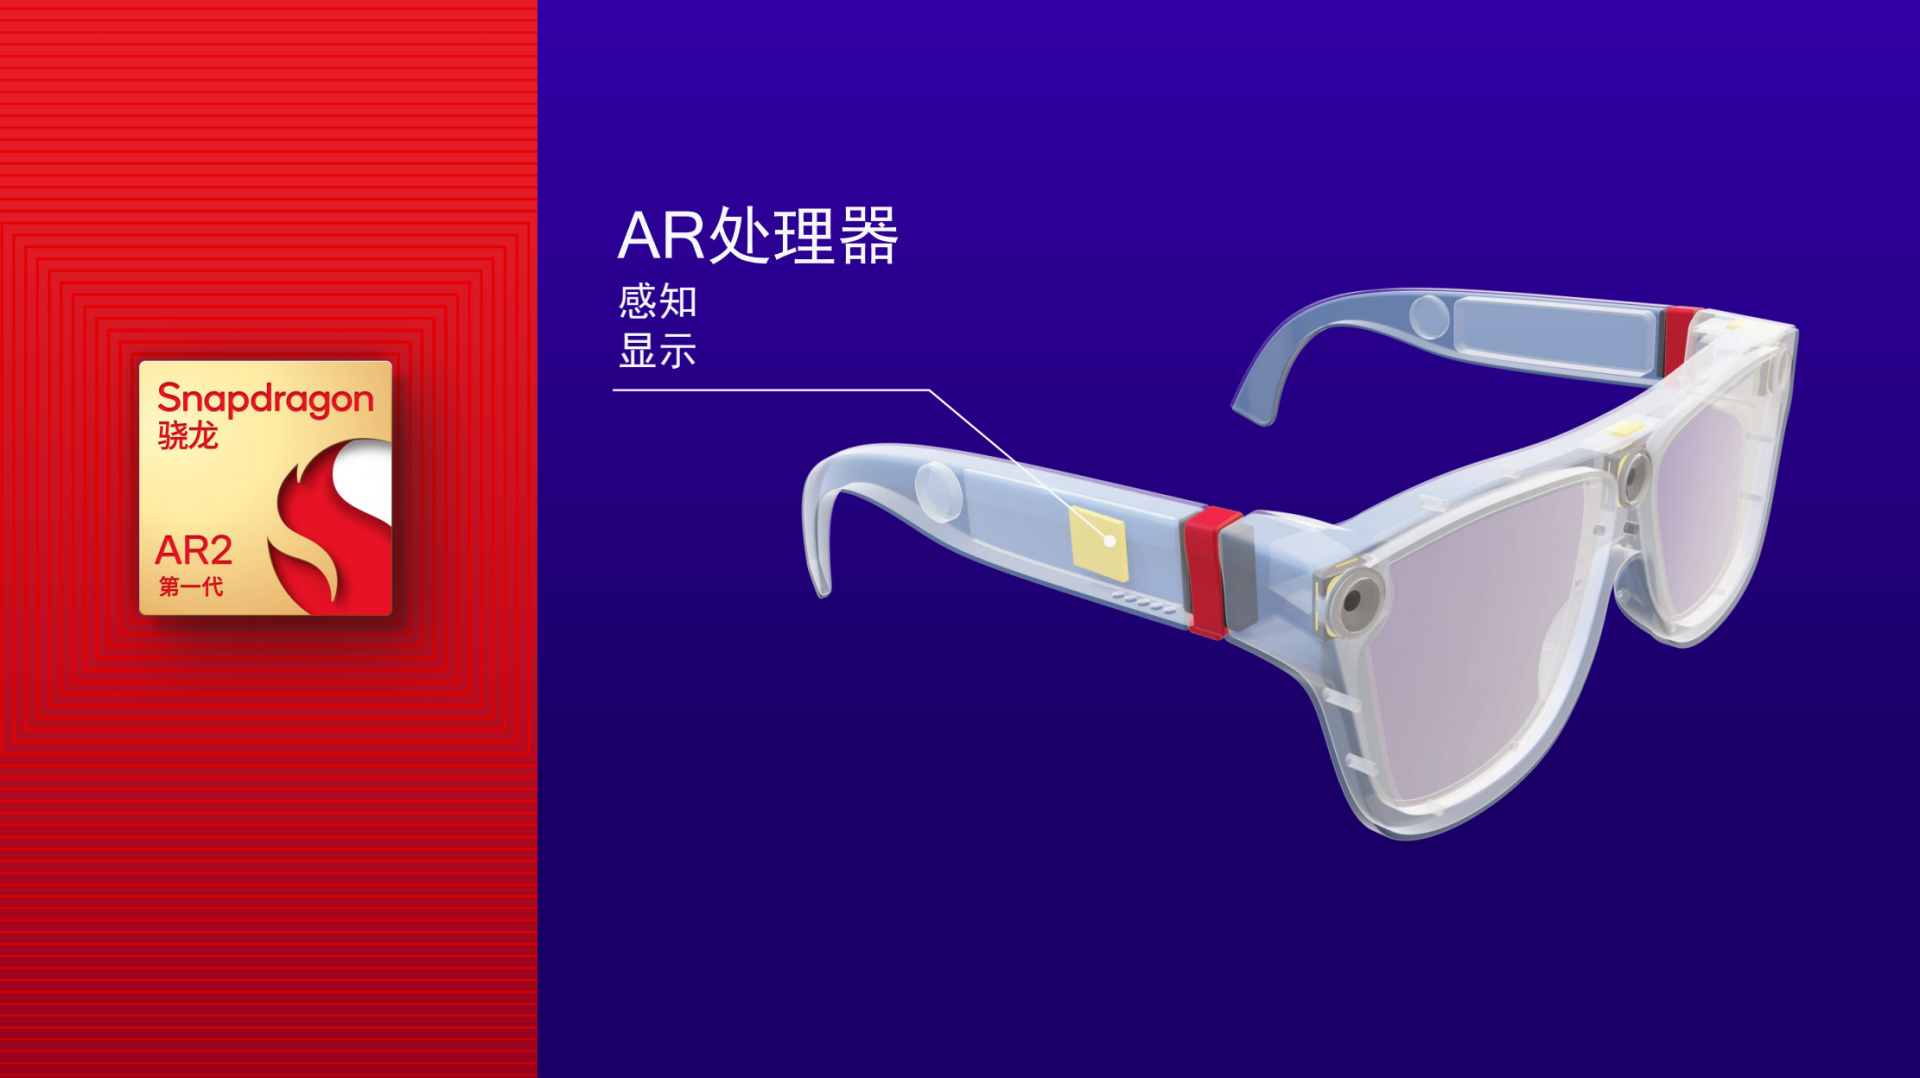 采用分布式处理架构，打造超轻薄、高性能AR眼镜，高通第一代骁龙AR2平台发布-我爱音频网